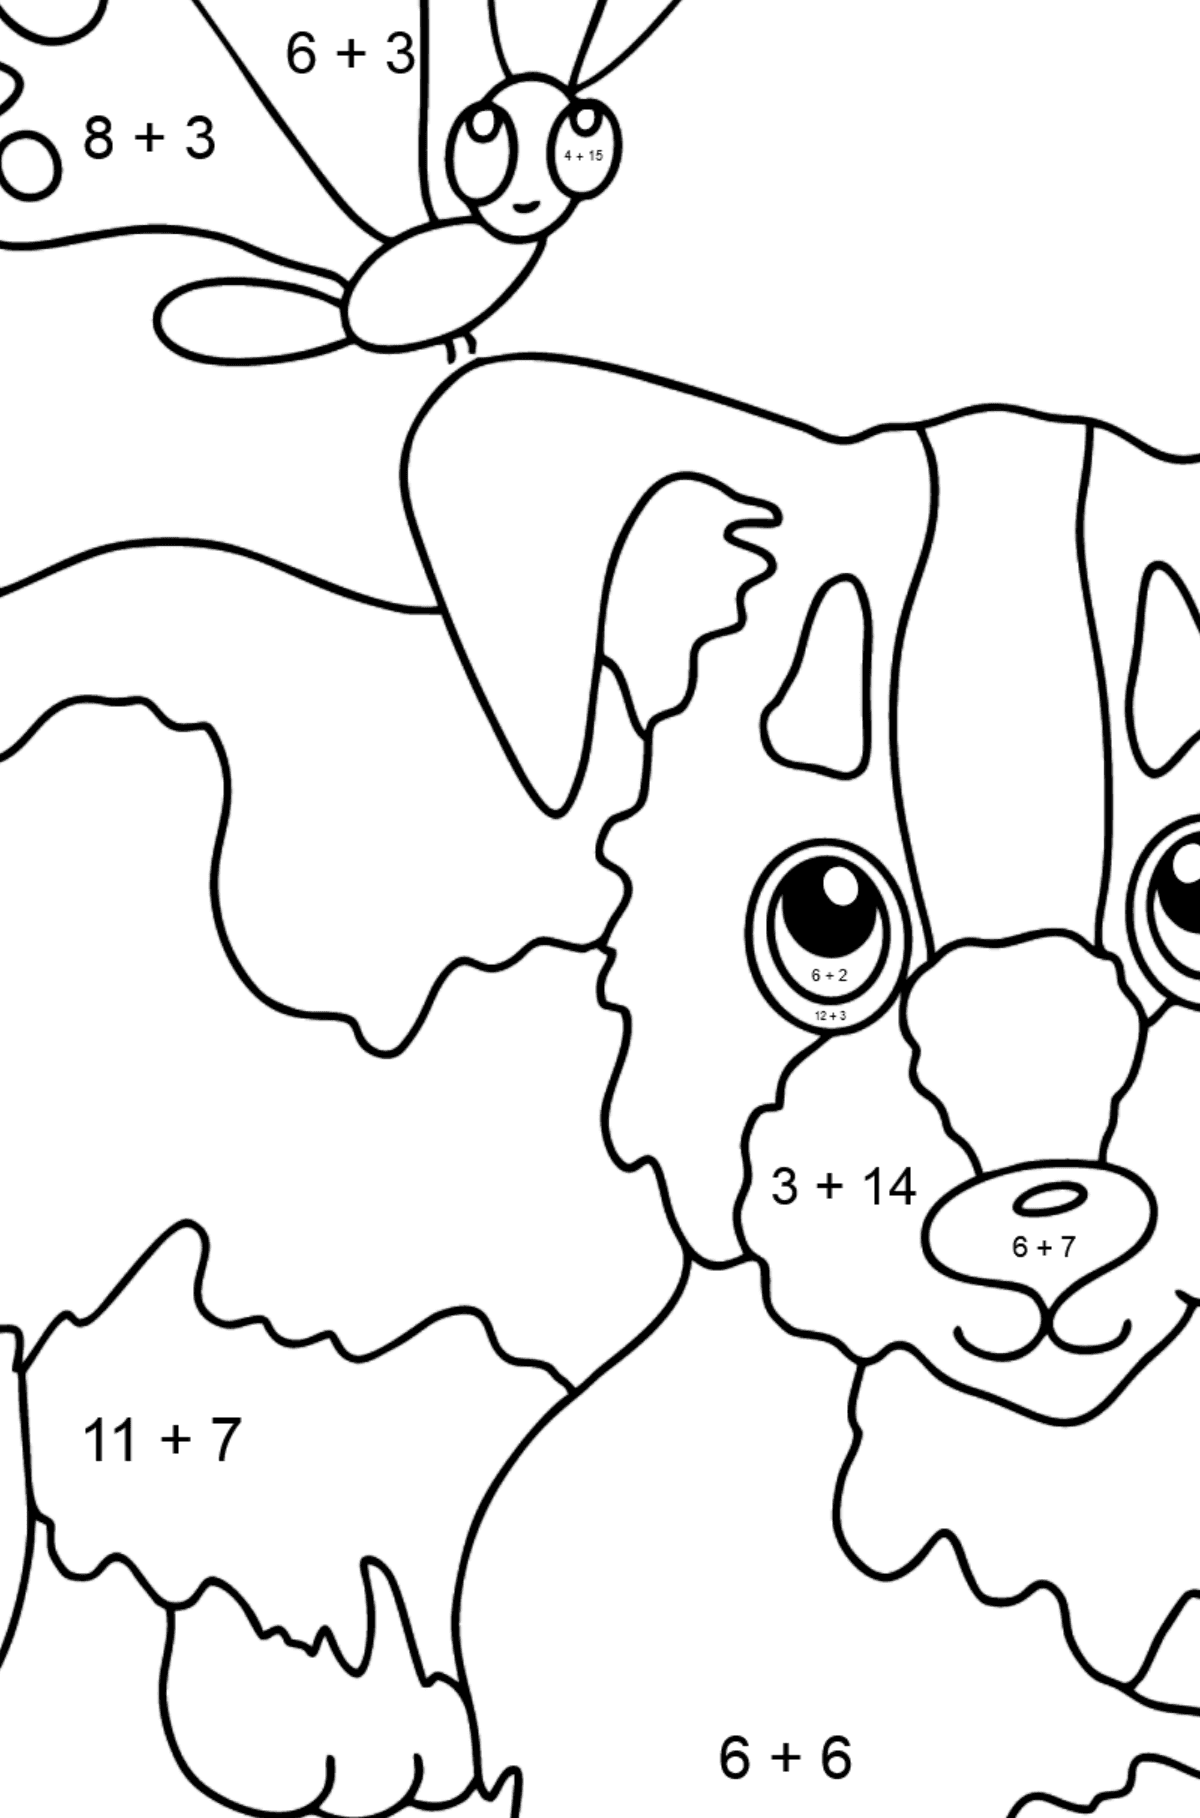 Tegning til fargelegging hund og sommerfugl (enkelt) - Matematisk fargeleggingsside - addisjon for barn